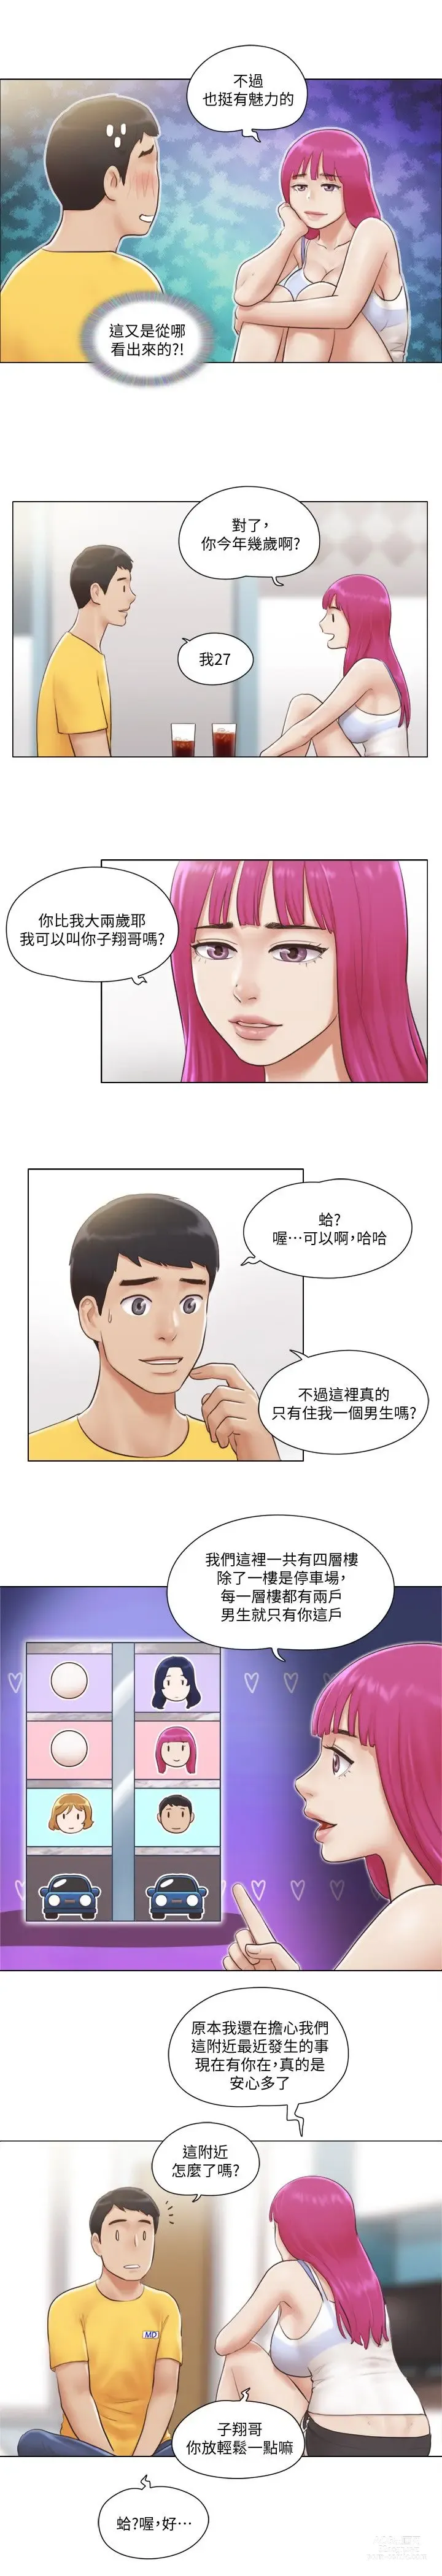 Page 34 of manga 單身女子公寓 1-41 END